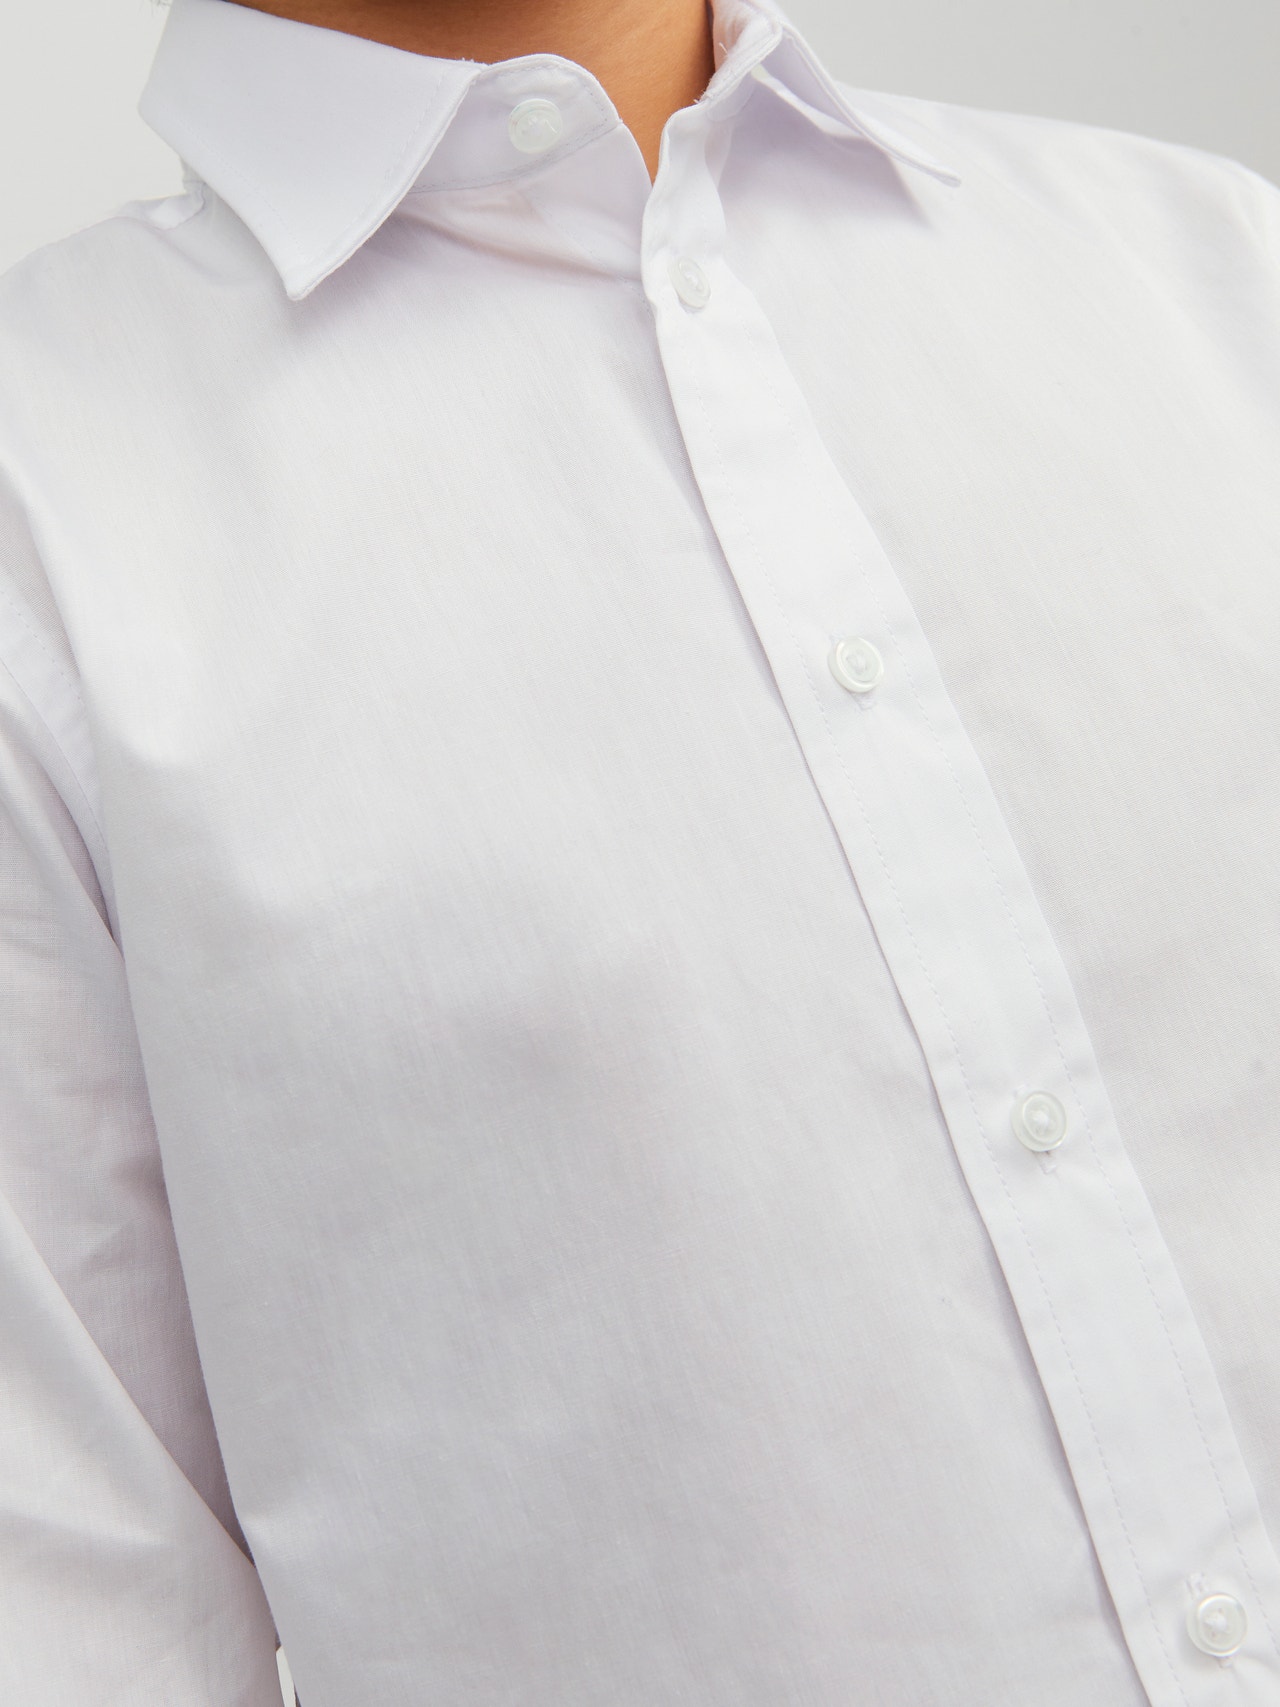 Jack & Jones Dress shirt For boys -White - 12223343